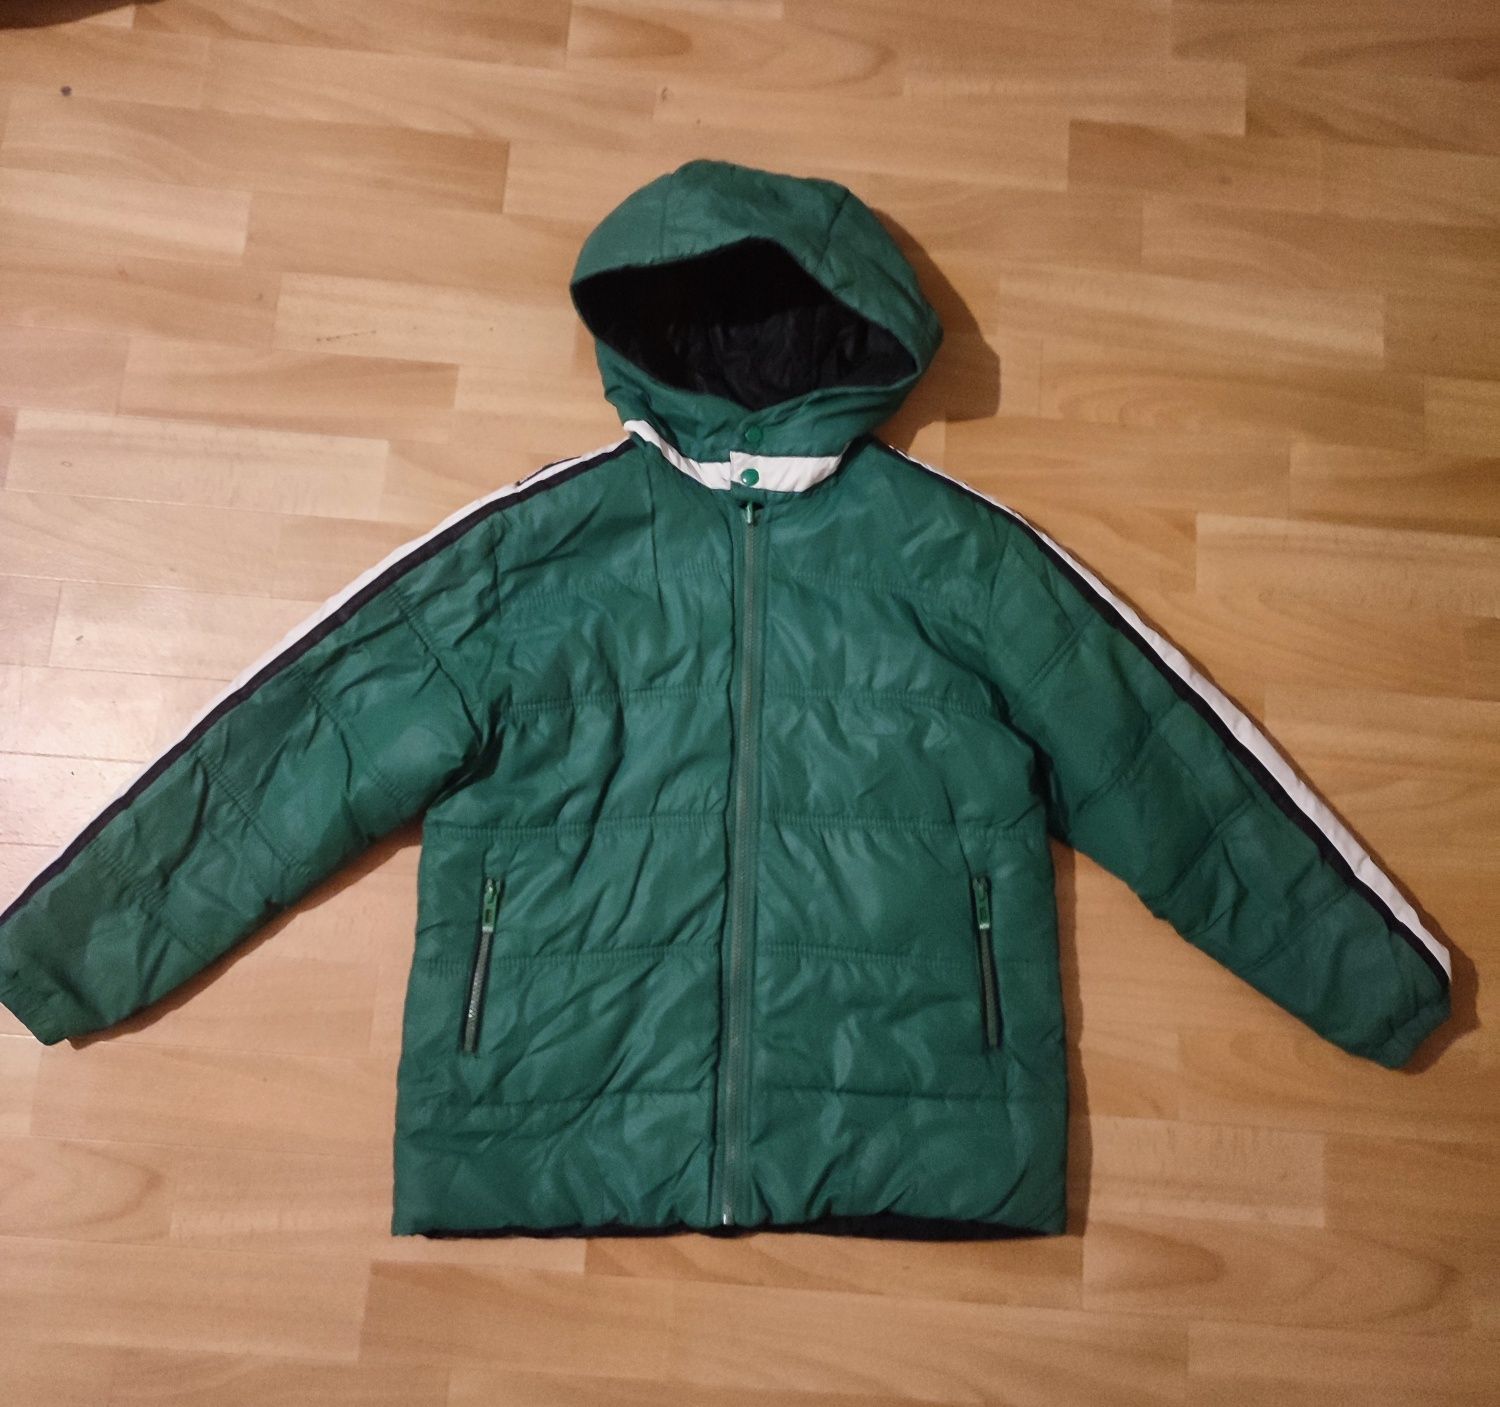 Пуховик куртка для мальчика р 152-156